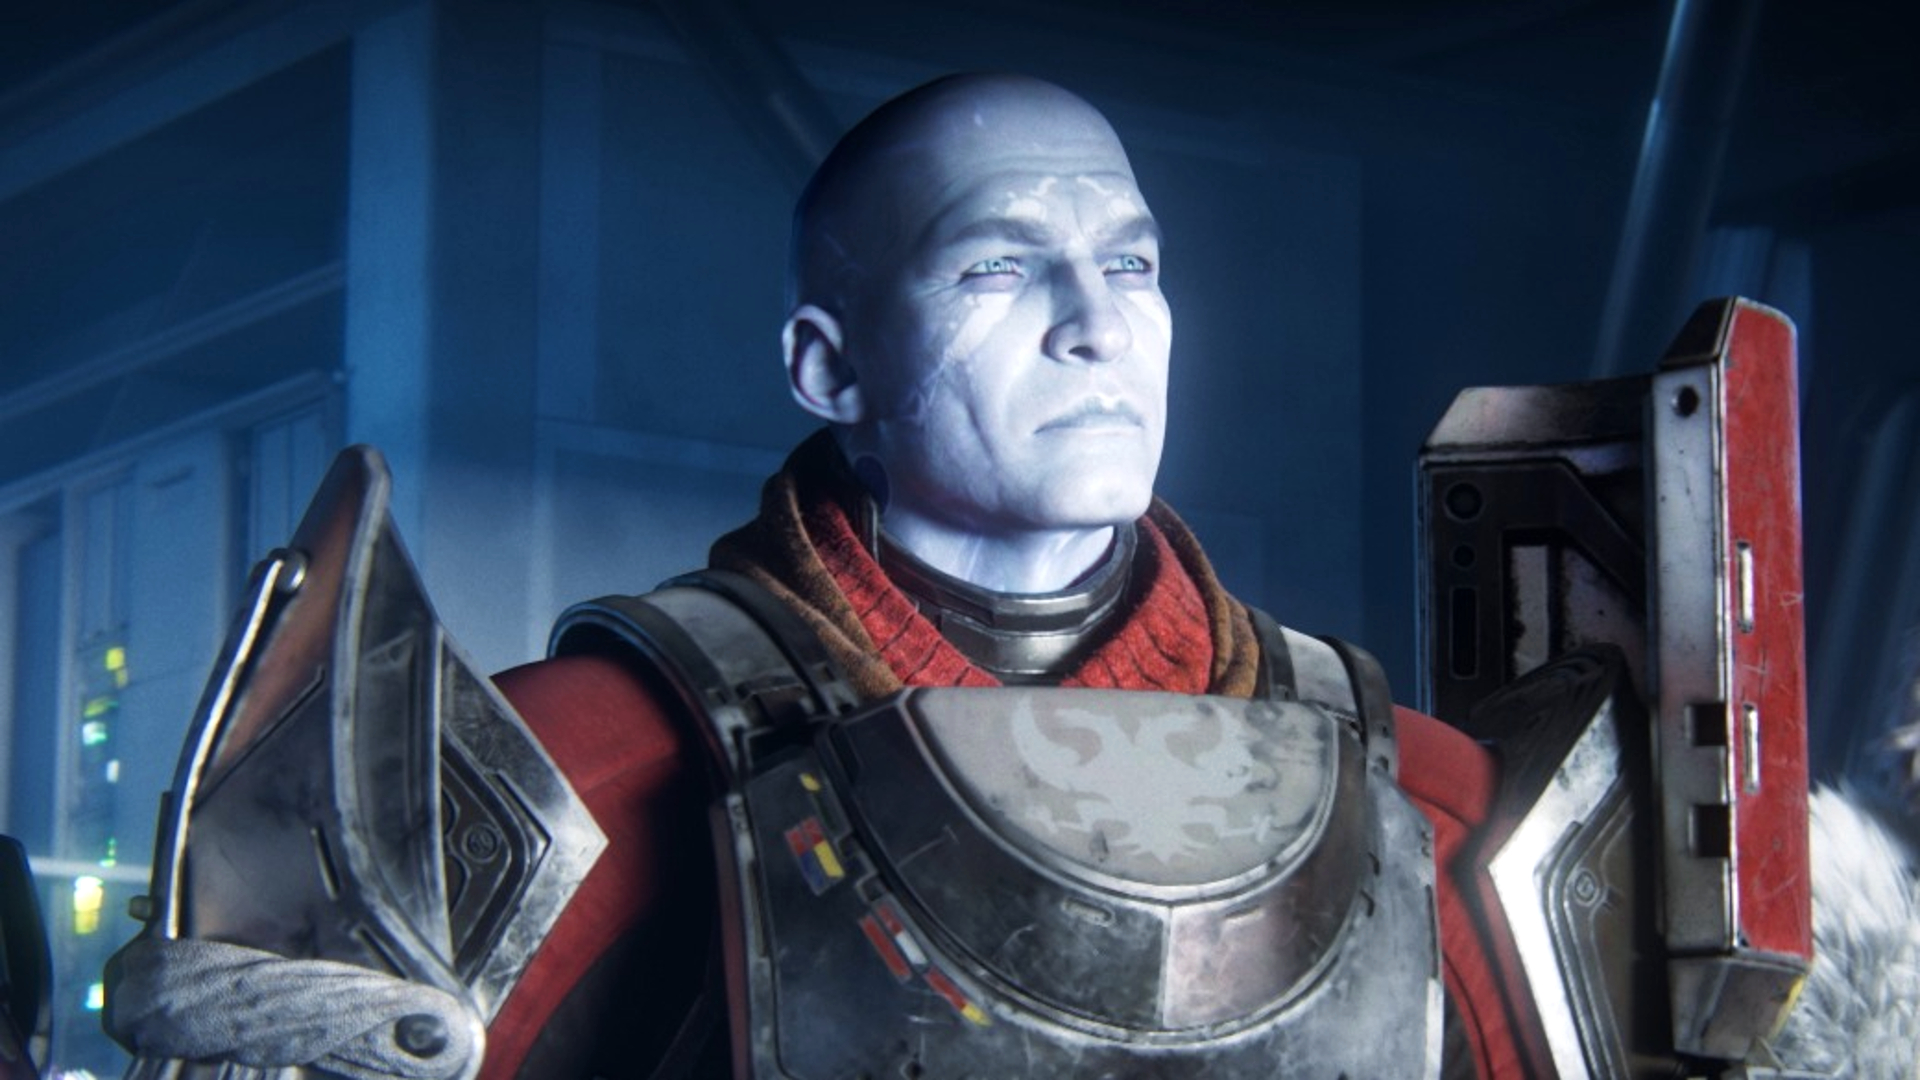 Командующий Завала, человек из Destiny 2, гордо стоит серебро и красные доспехи